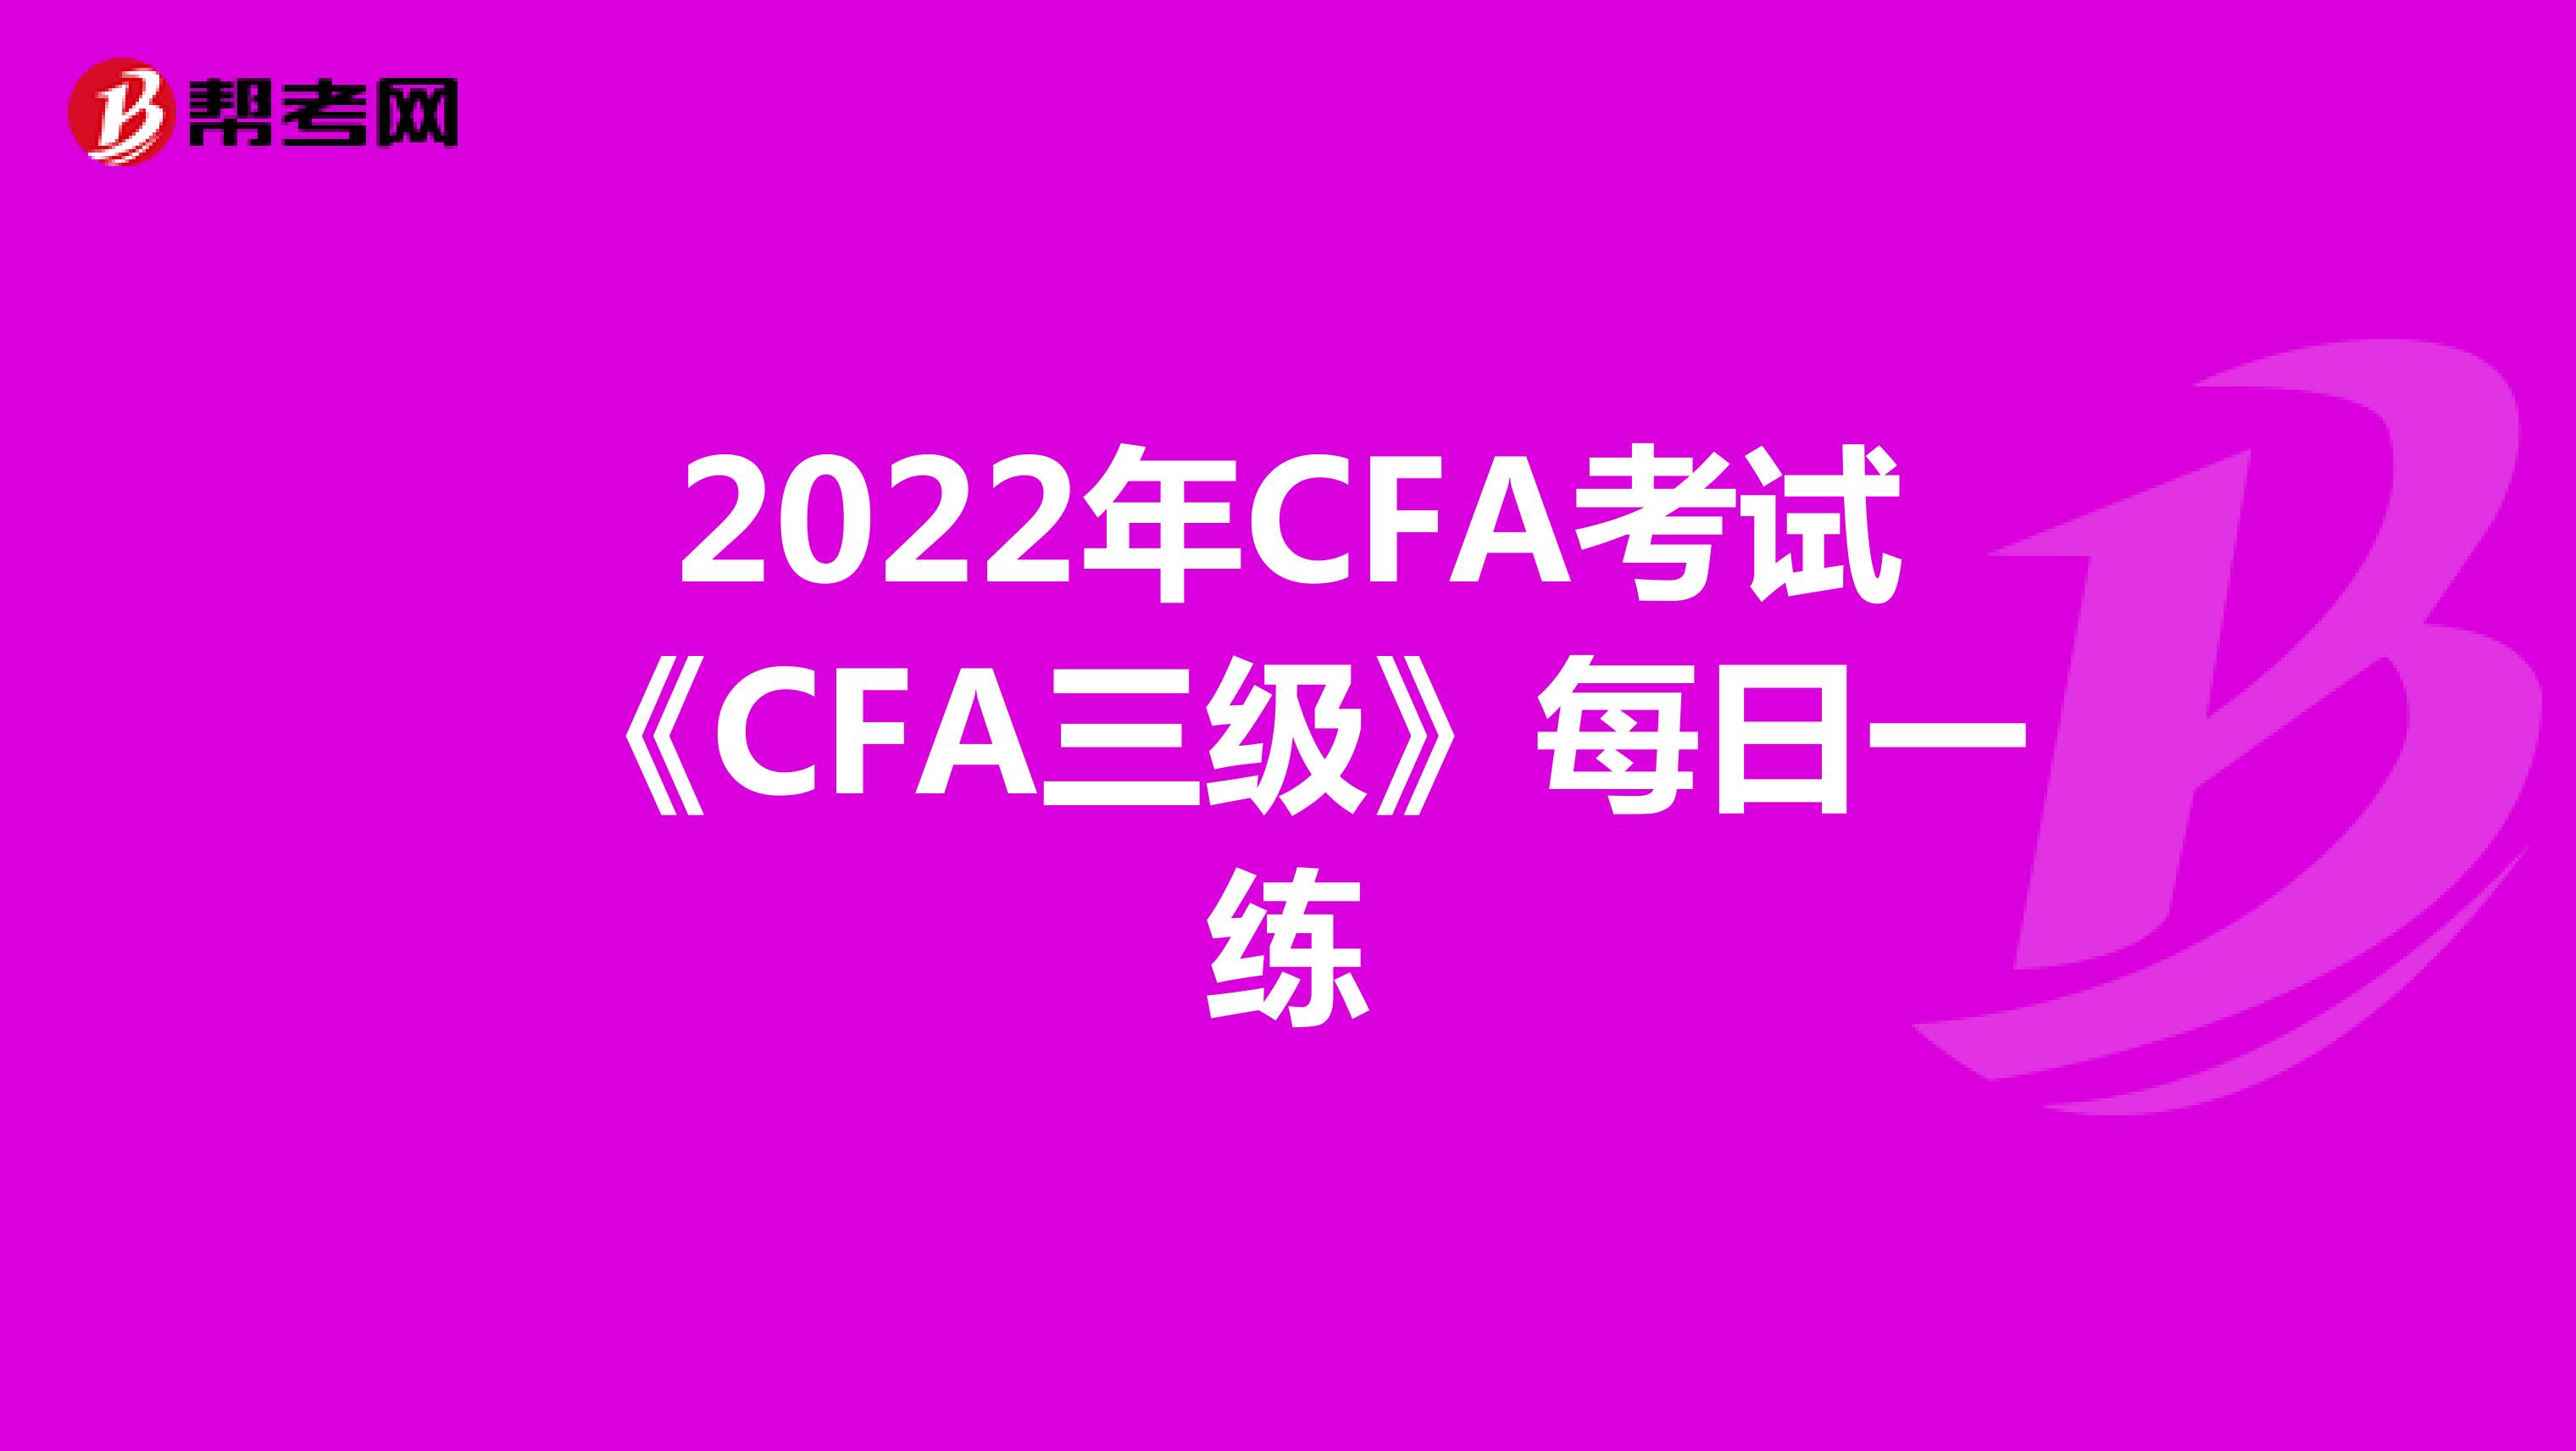 2022年CFA考试《CFA三级》每日一练